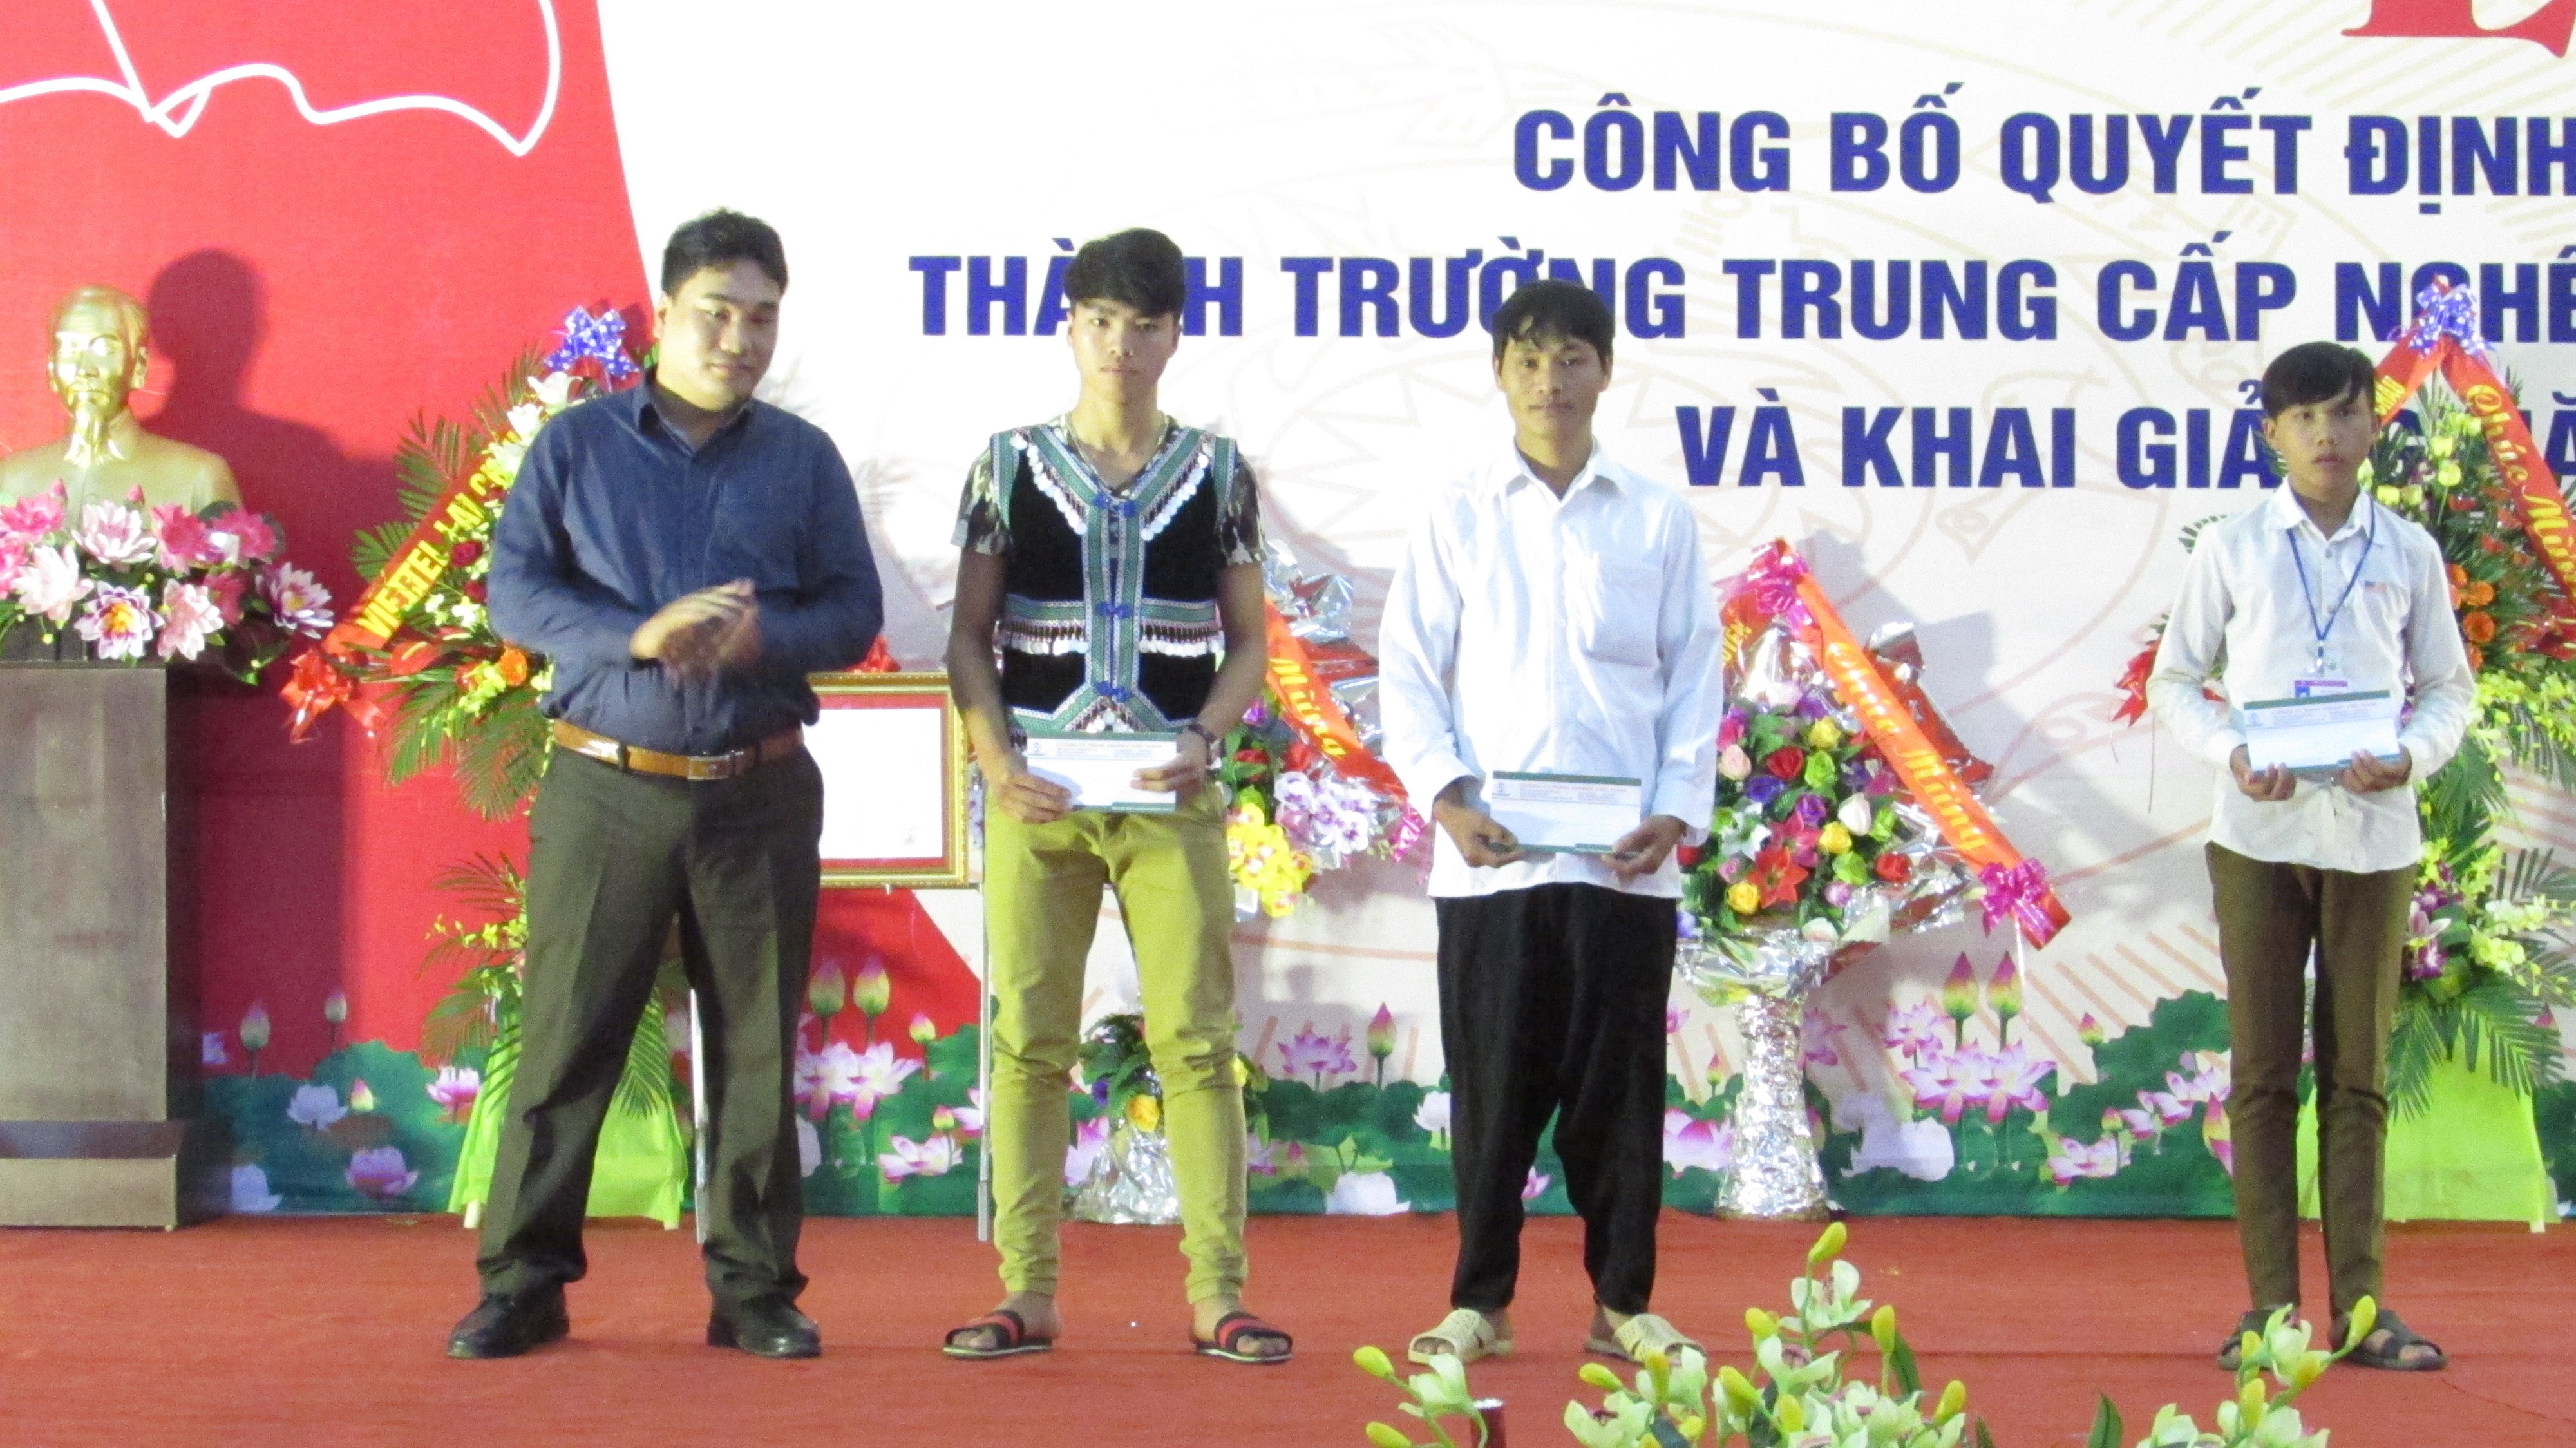 Sunny Việt Nam chú trọng liên kết hợp tác với các cơ sở đào tạo